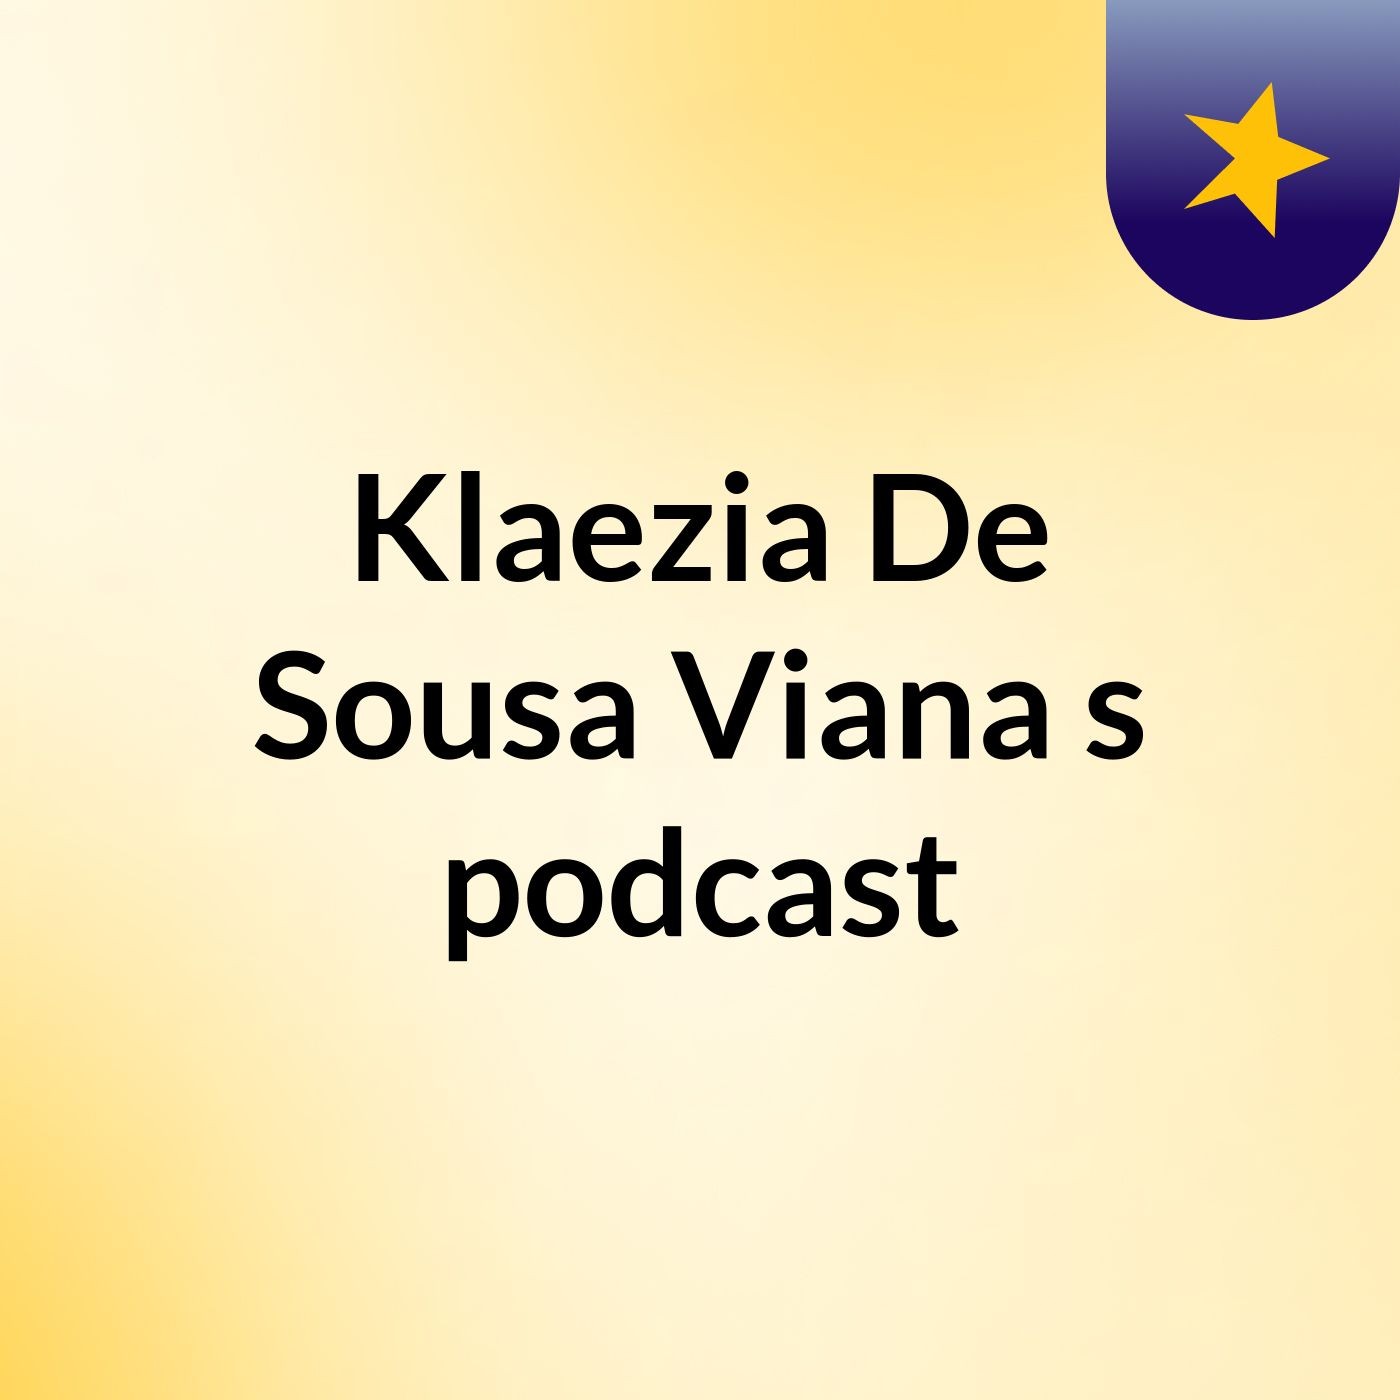 Klaezia De Sousa Viana's podcast